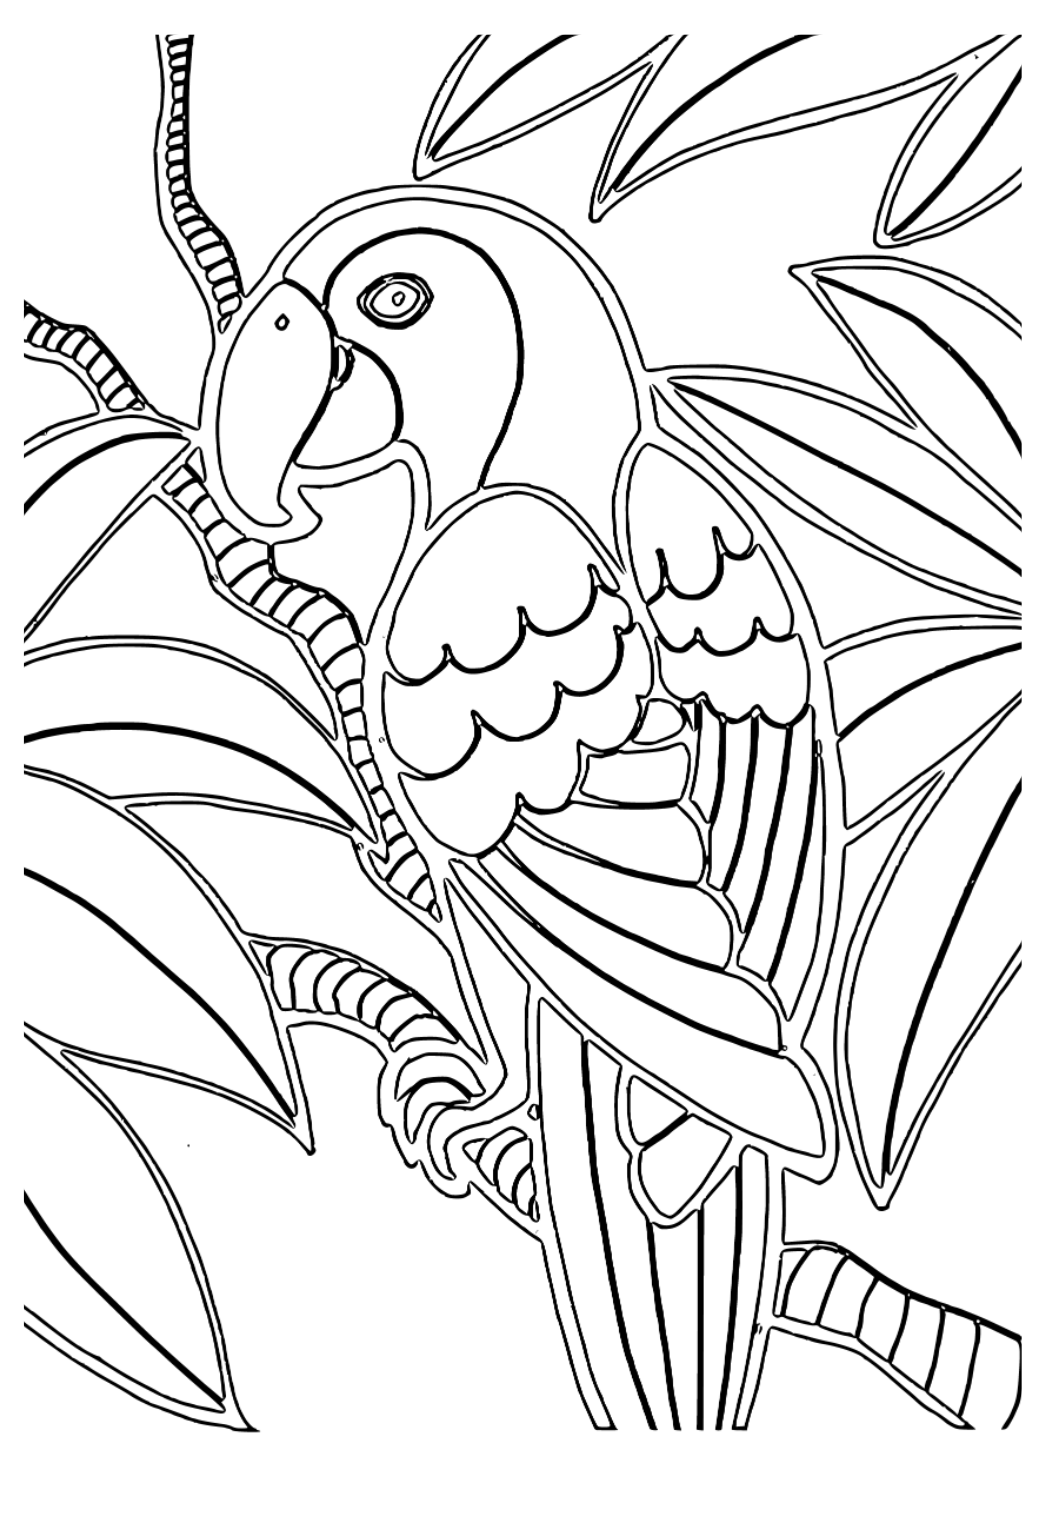 Darmowa kolorowanka ptak papuga do druku dla dorosåych i dzieci